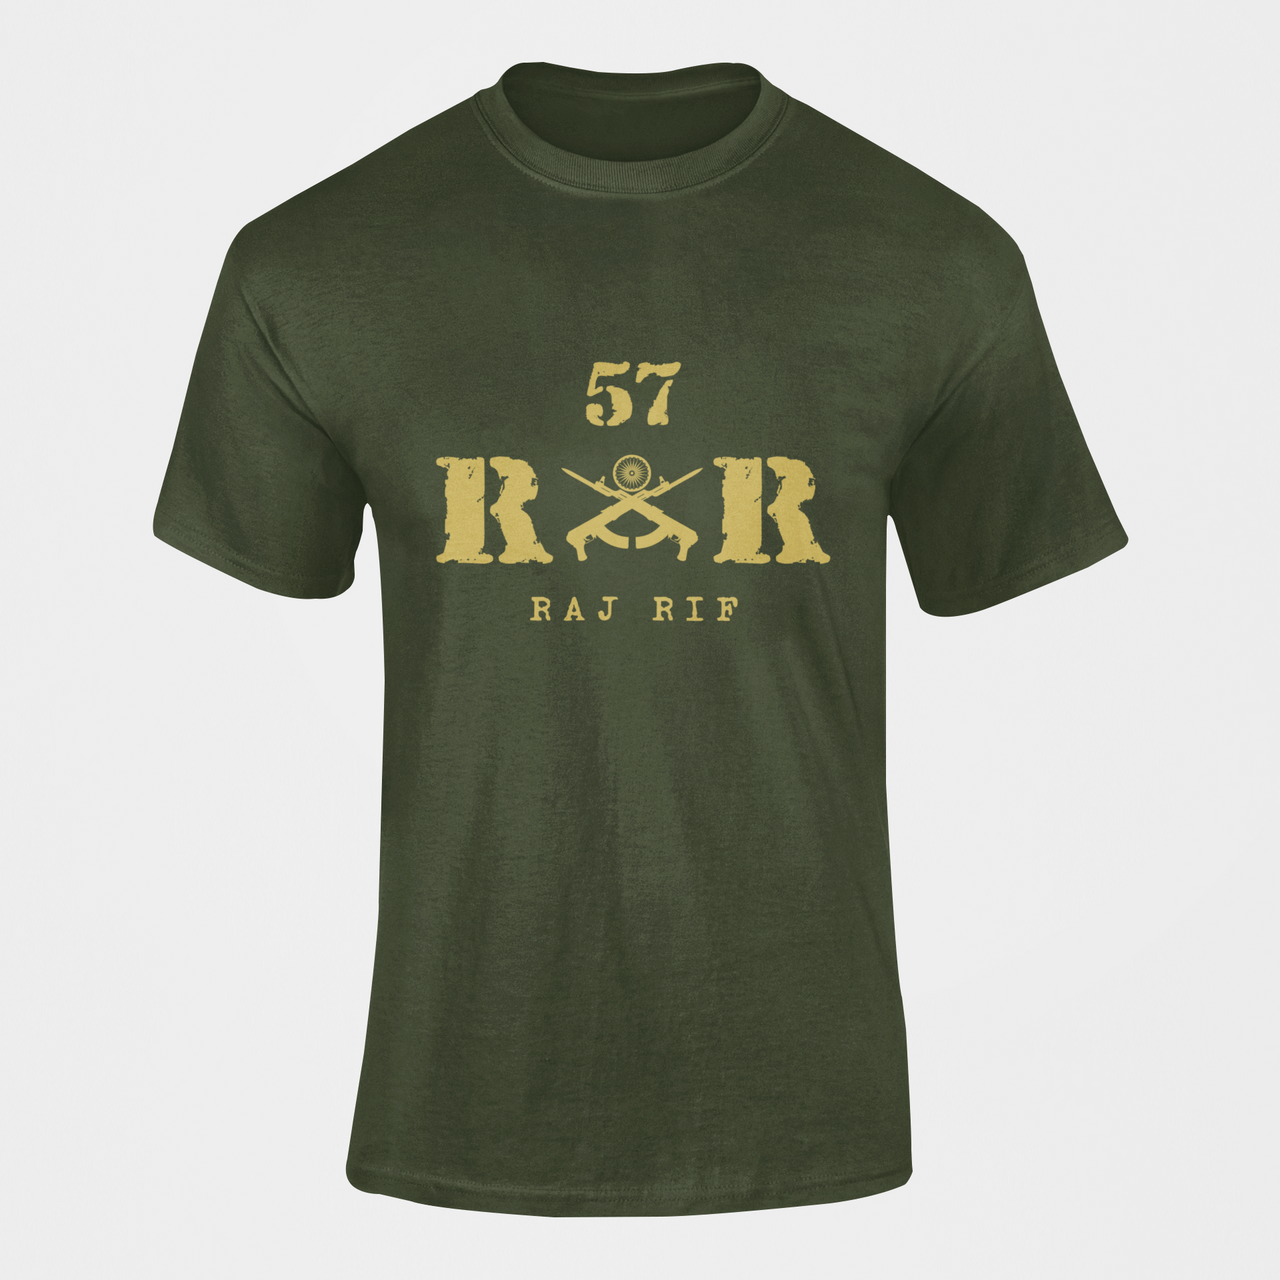 Rashtriya Rifles T-shirt - 57 RR Raj Rif (Men)